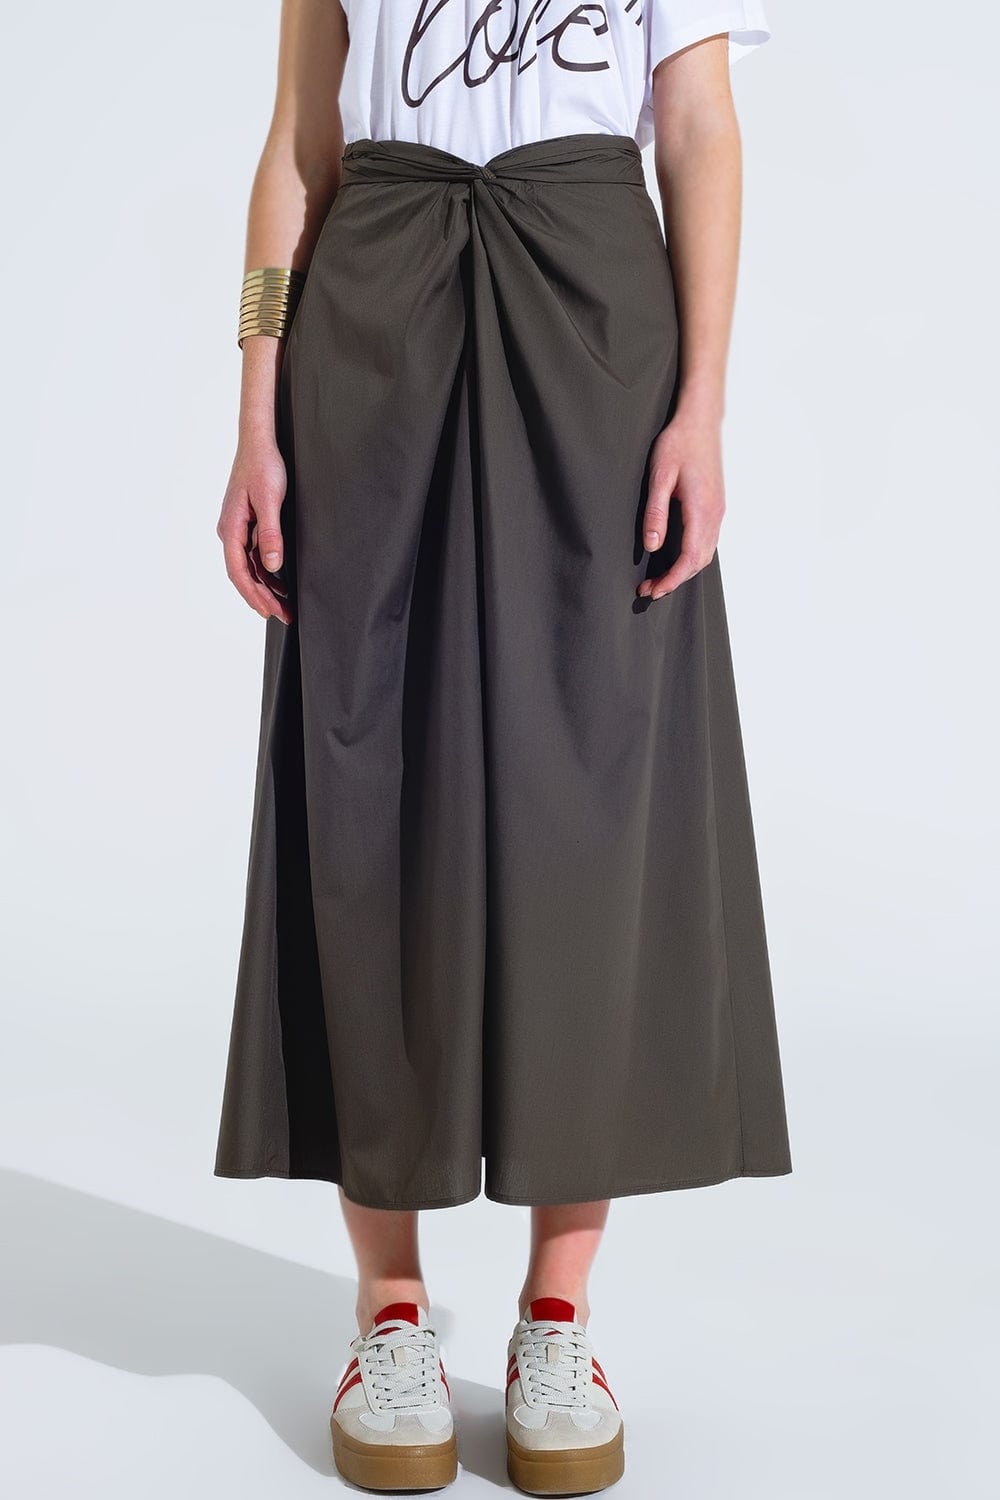 Q2 Women's Skirt Maxi Khaki Poplin Skirt With Knot Detail At The Waist